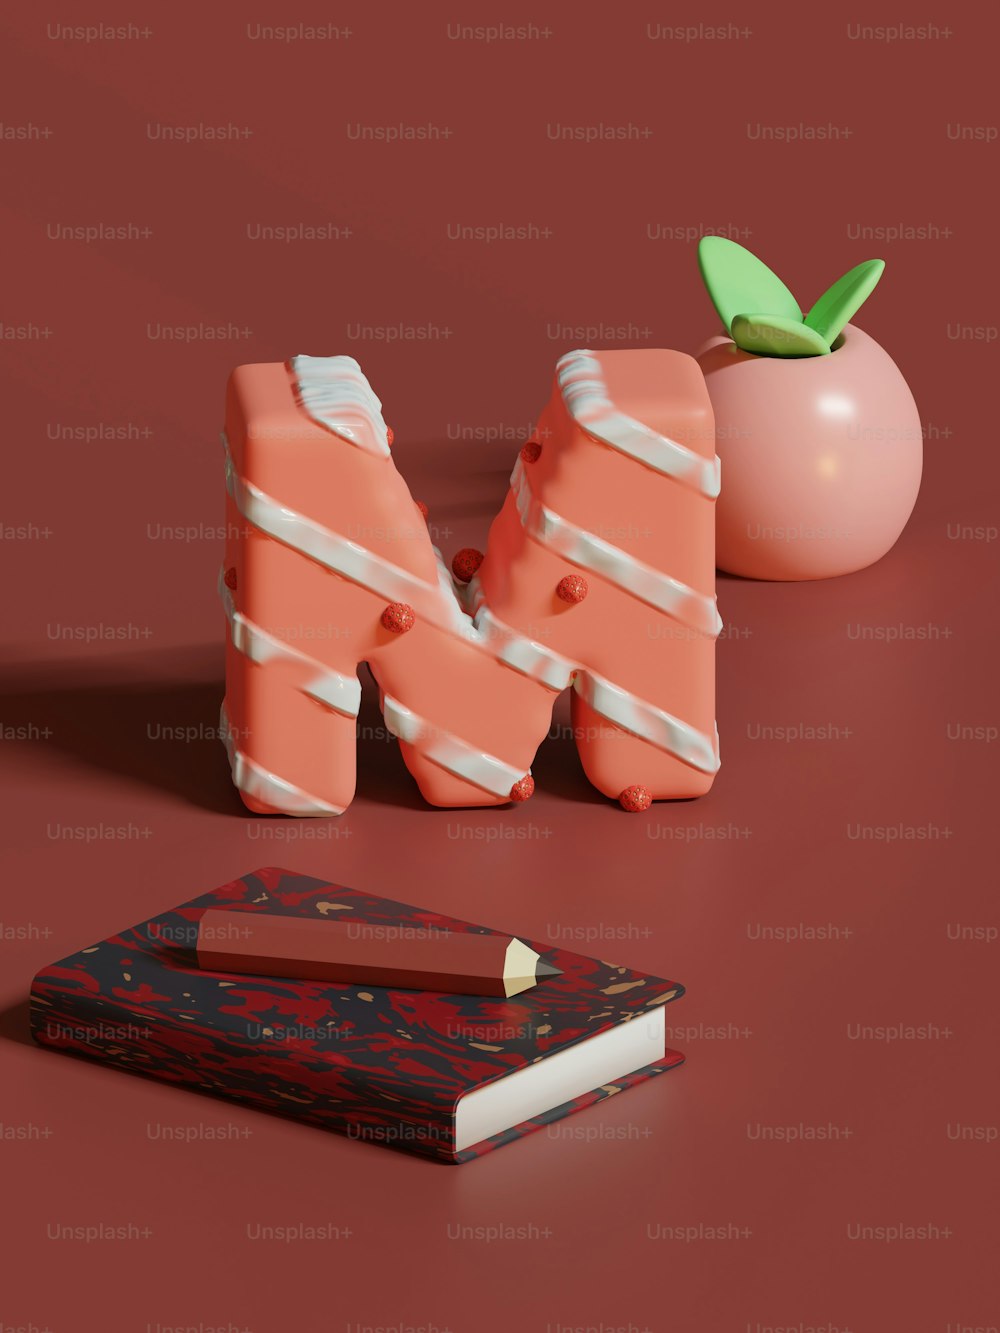 un livre, un crayon et une pomme sur une table